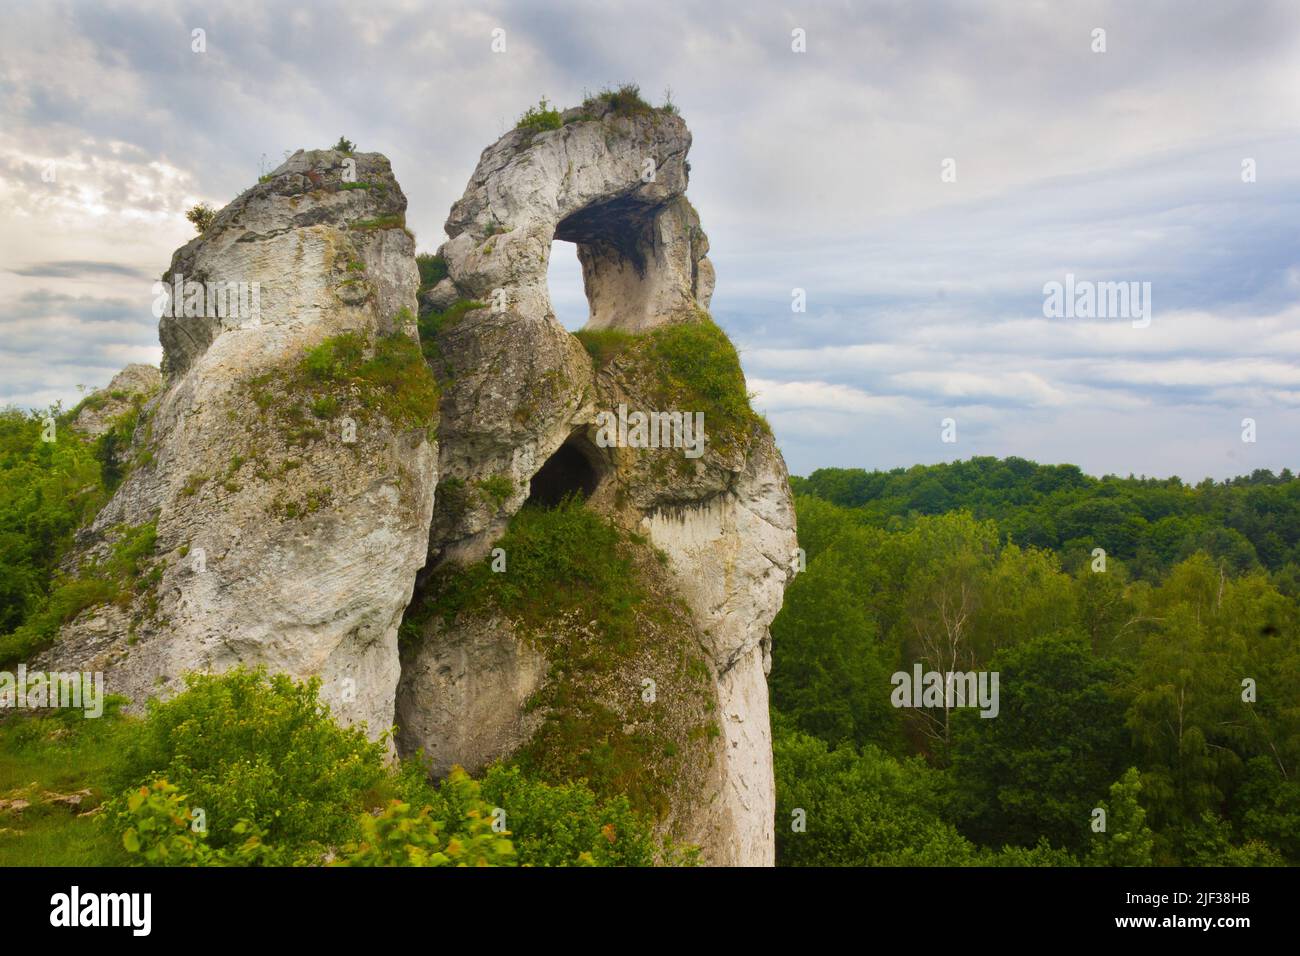 Limestone rock formation called Okiennik Wielki in Piaseczno, near city Zawiercie, Jura Krakowsko-Czestochowska Upland, Poland Stock Photo